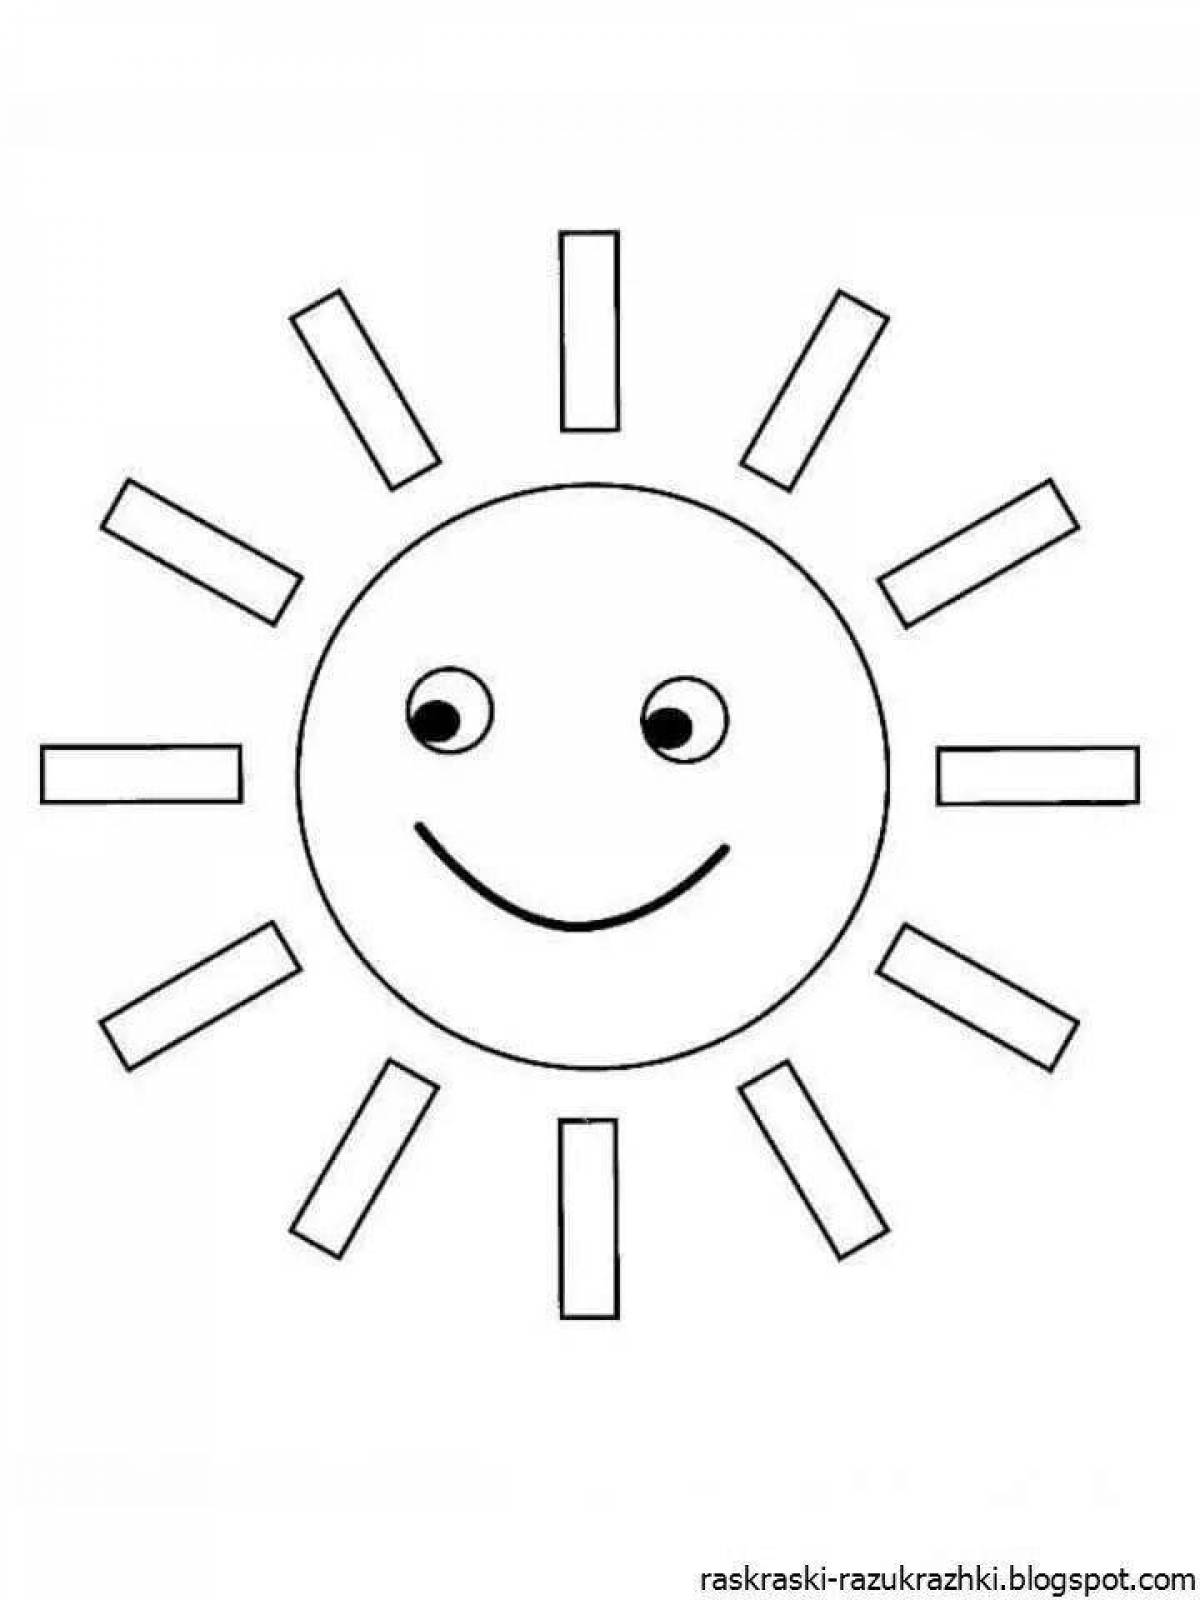 Привлекательная раскраска солнце для детей 2-3 лет